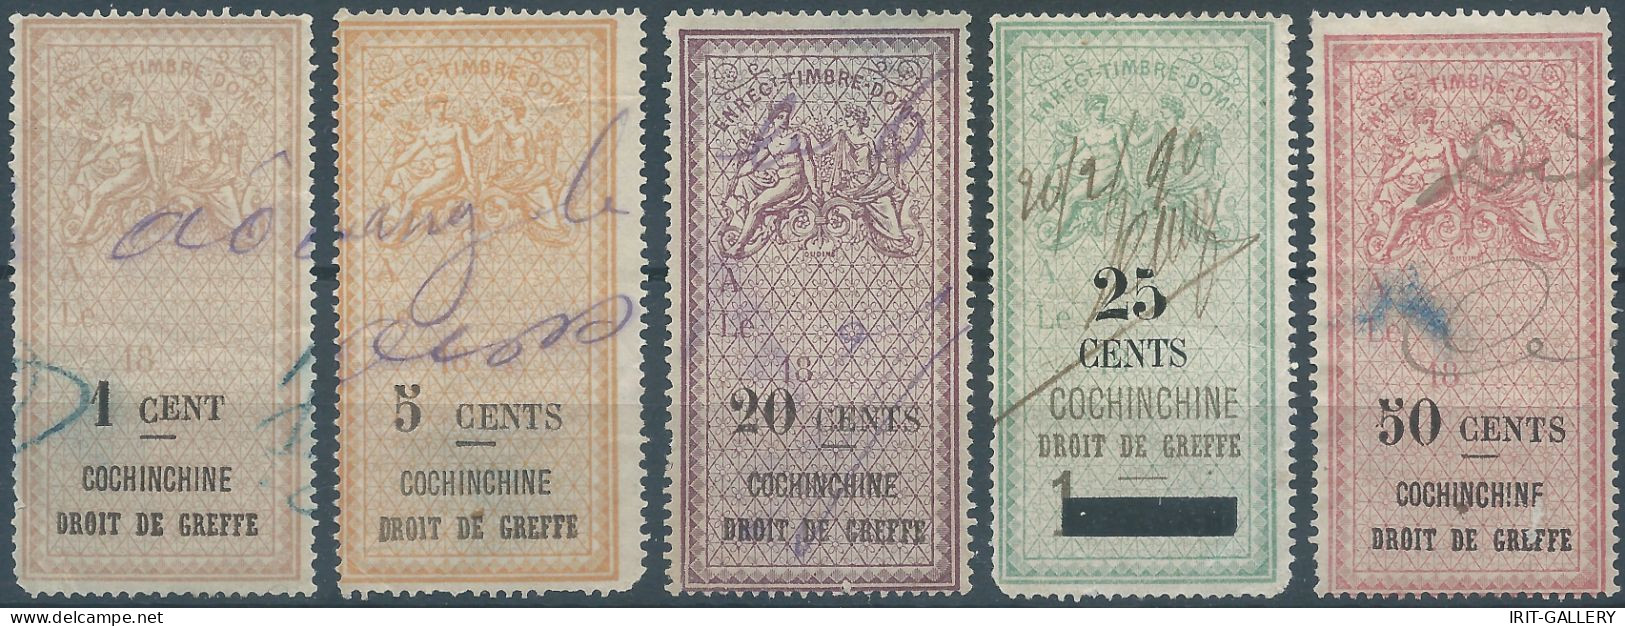 FRANCE,Cochinchine , Revenue Stamp Tax Fiscal DROIT DE GREFFE,1c-5c-20c-25c-50cents,Used - Very Old - Oblitérés